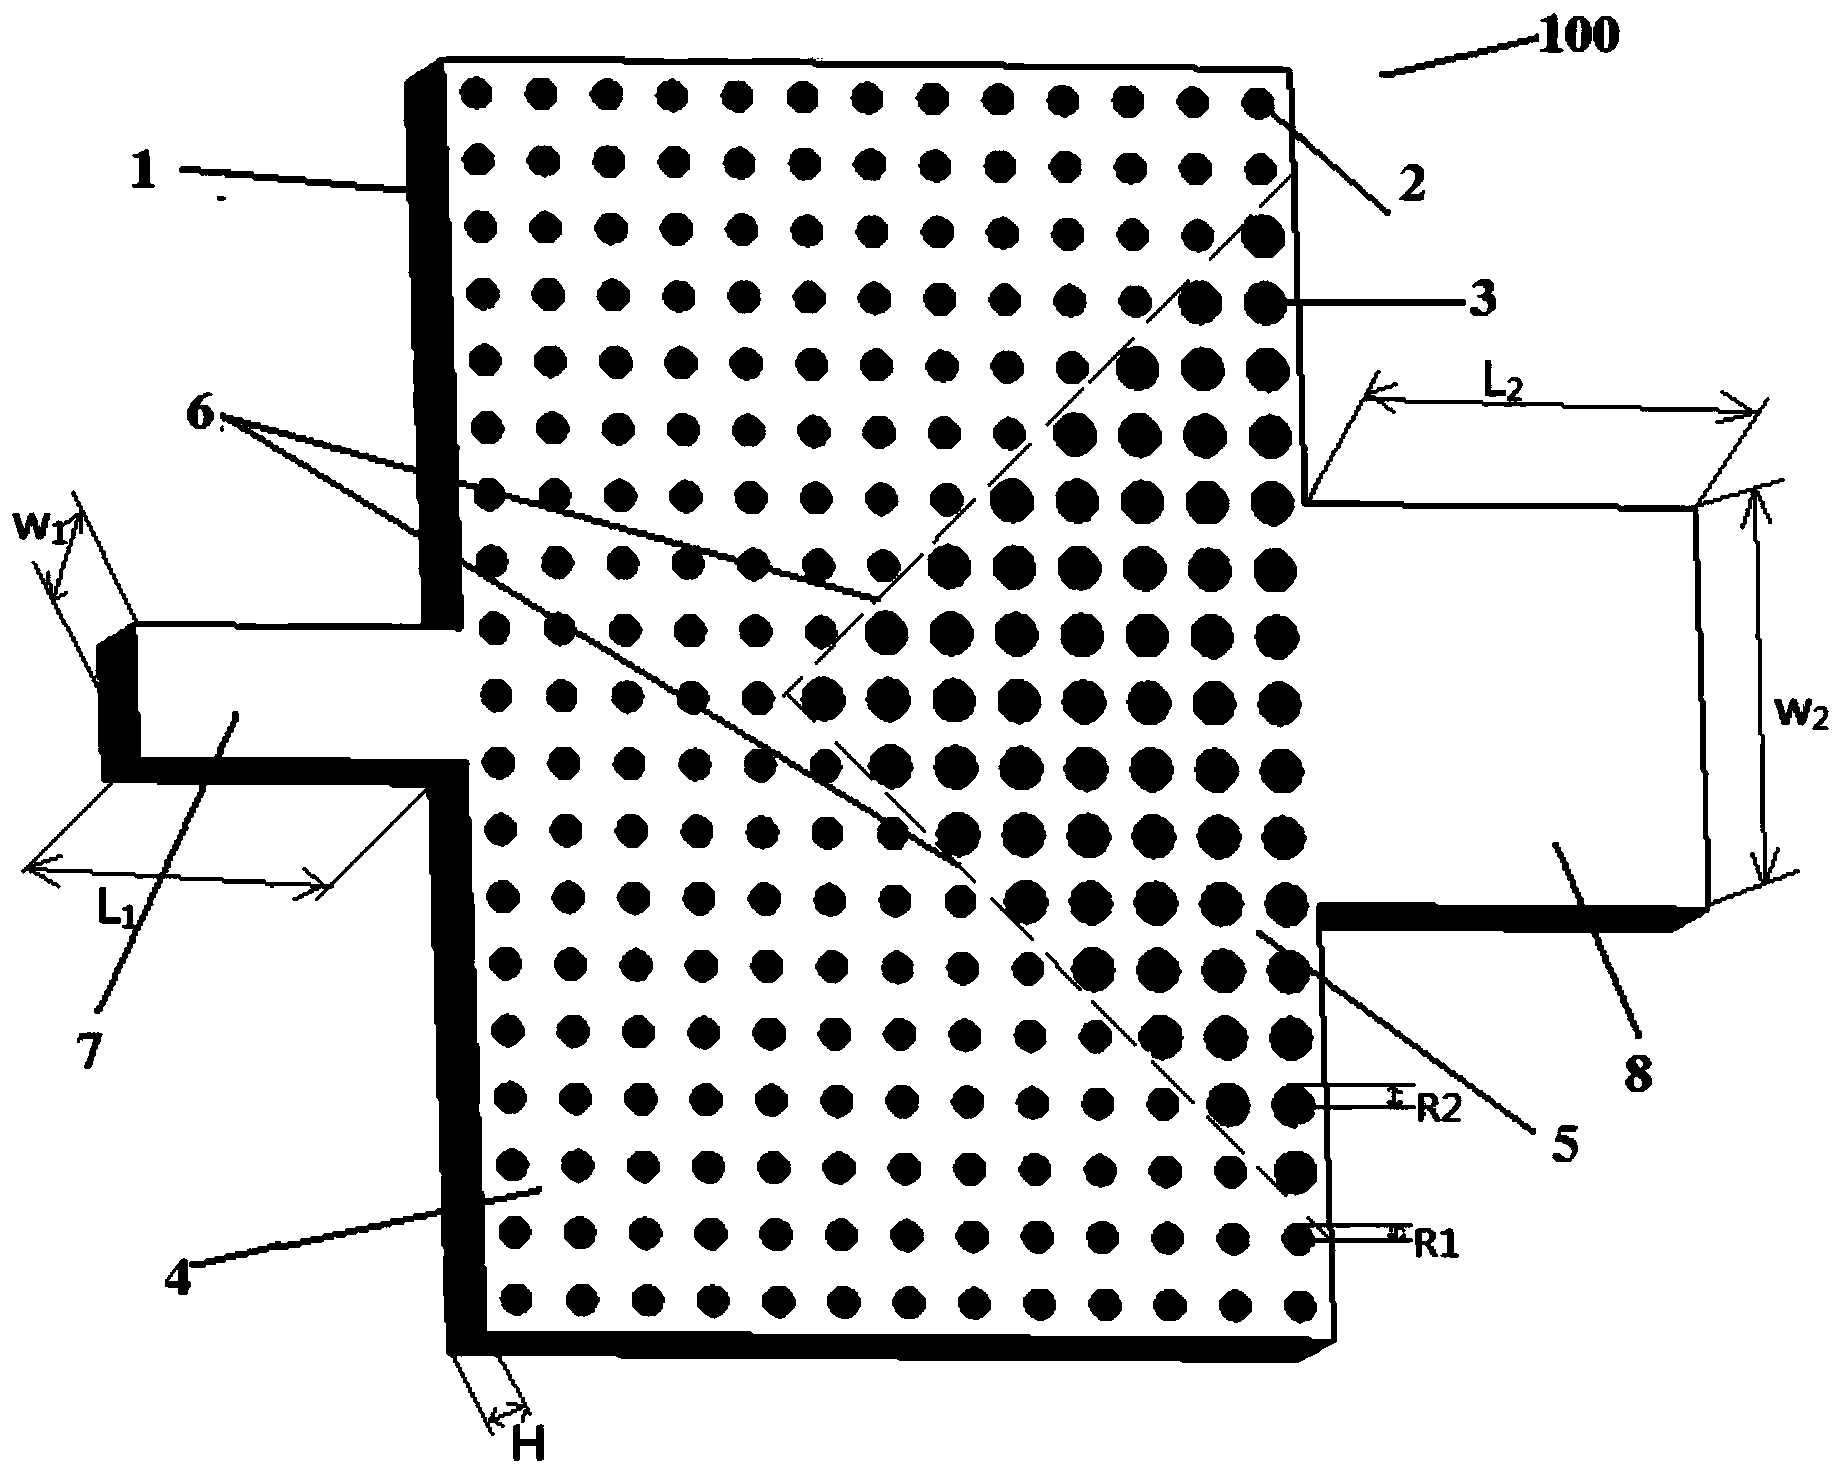 Terahertz isolator based on photonic crystal heterojunction